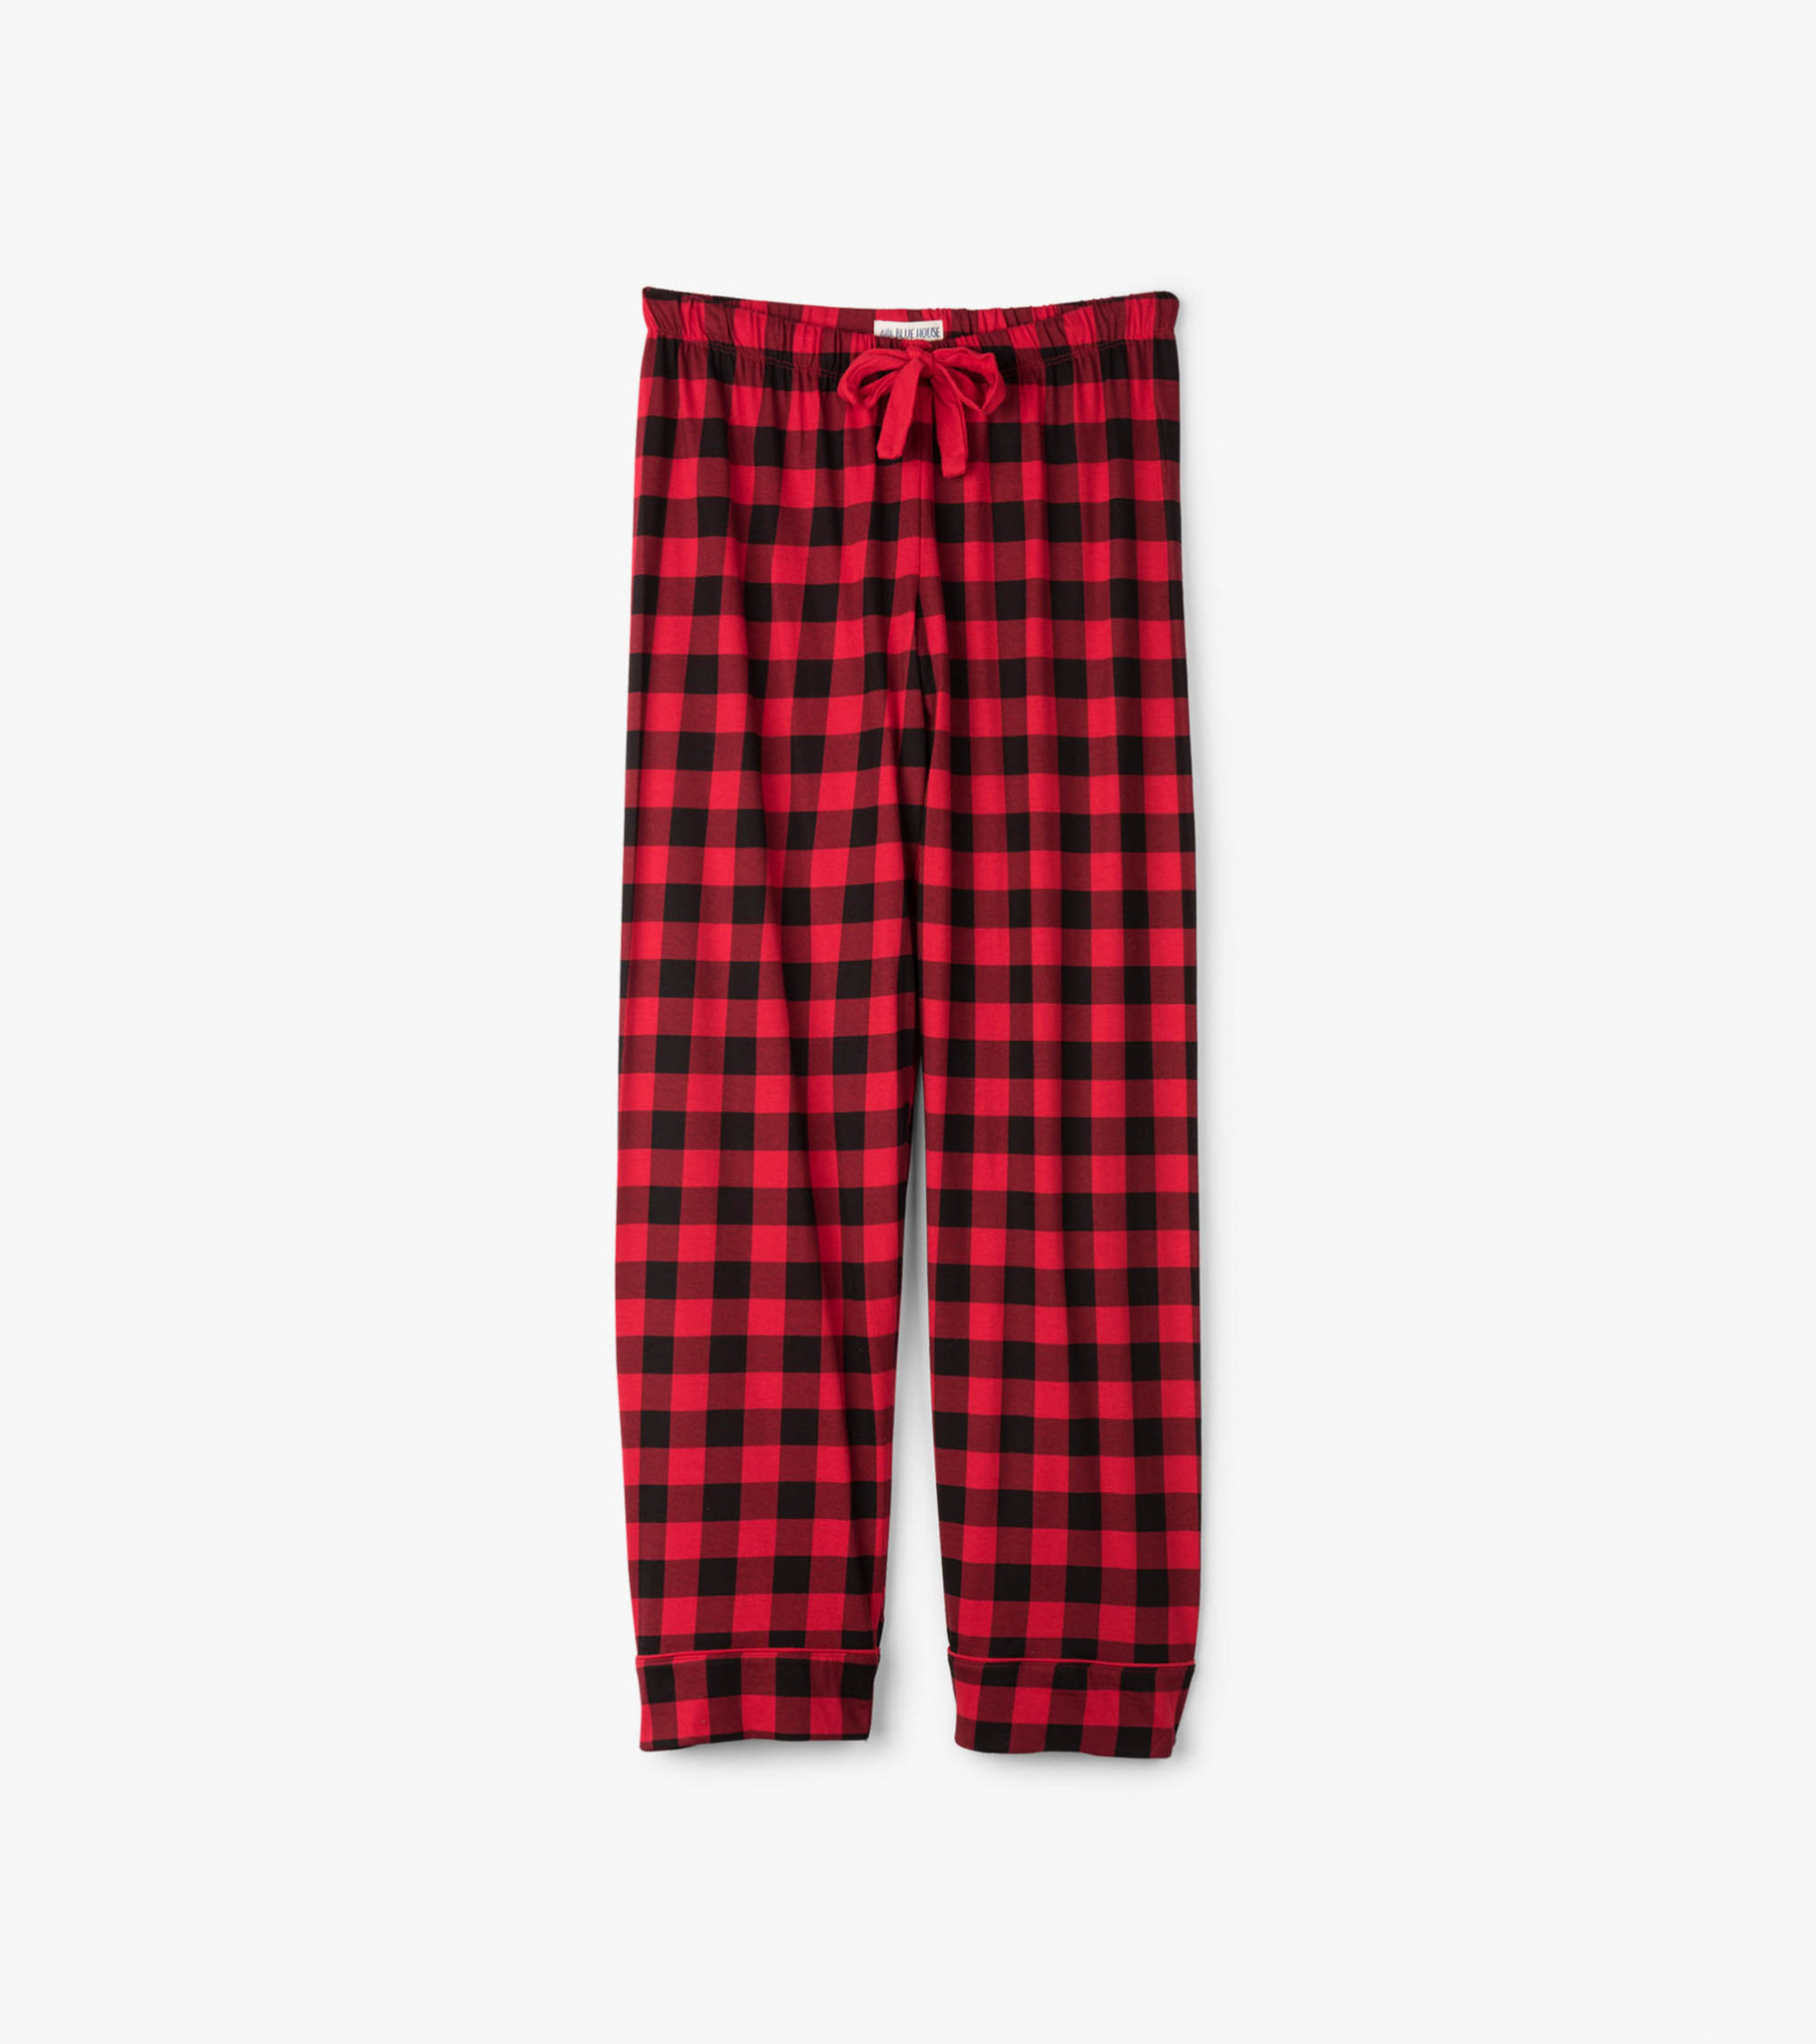 Buy Hatley Buffalo Plaid Men's Jersey Pajama Pant at